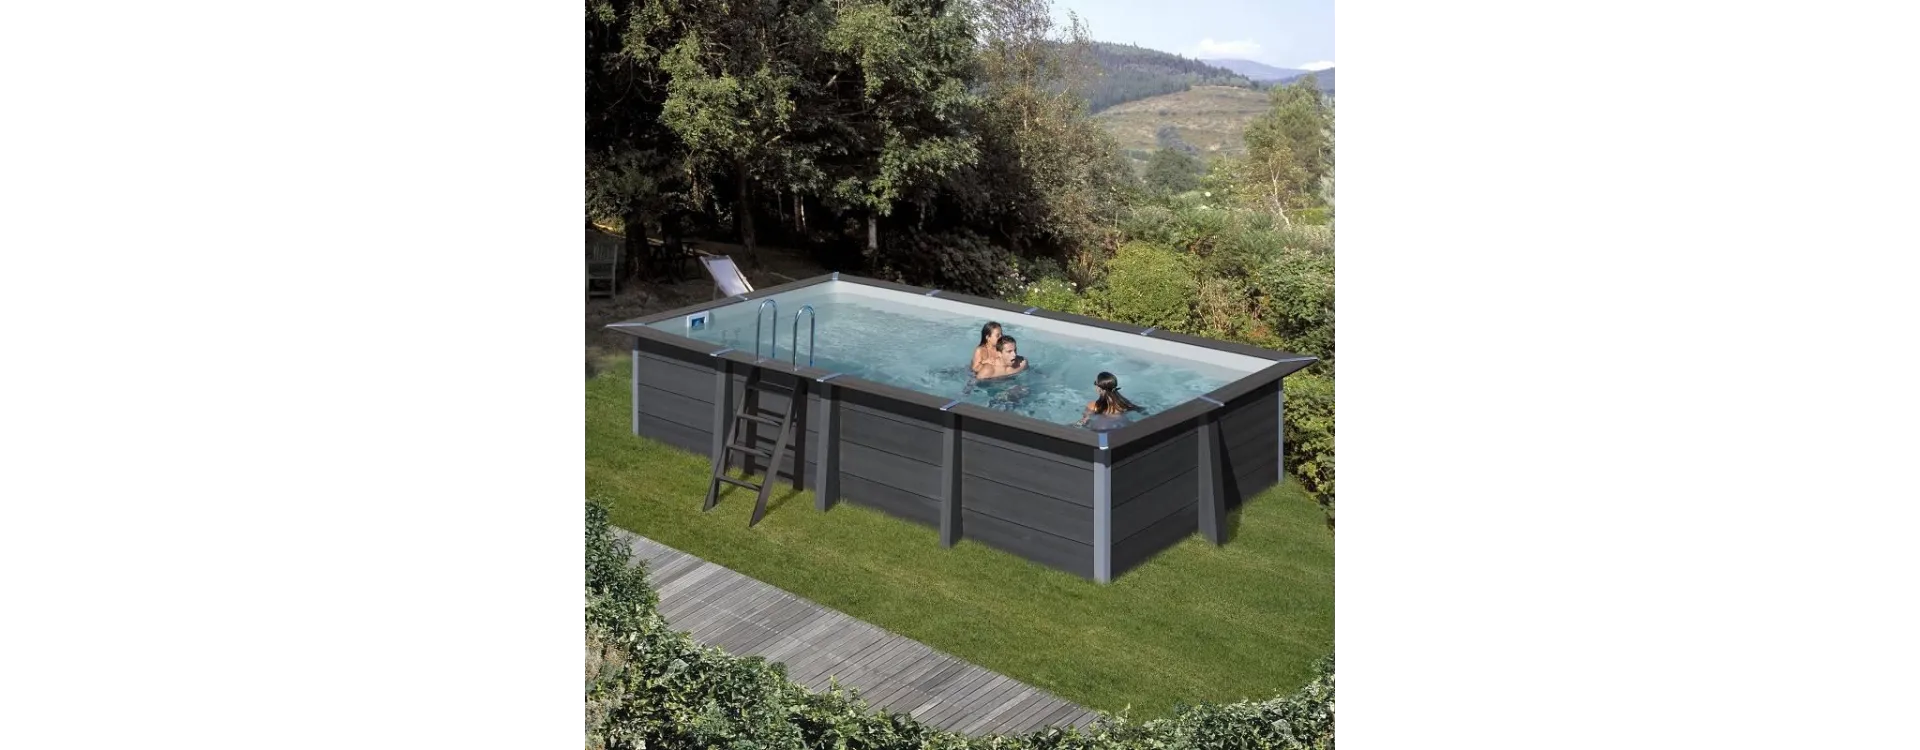 Las piscinas de composite, una gran opción para tu jardín